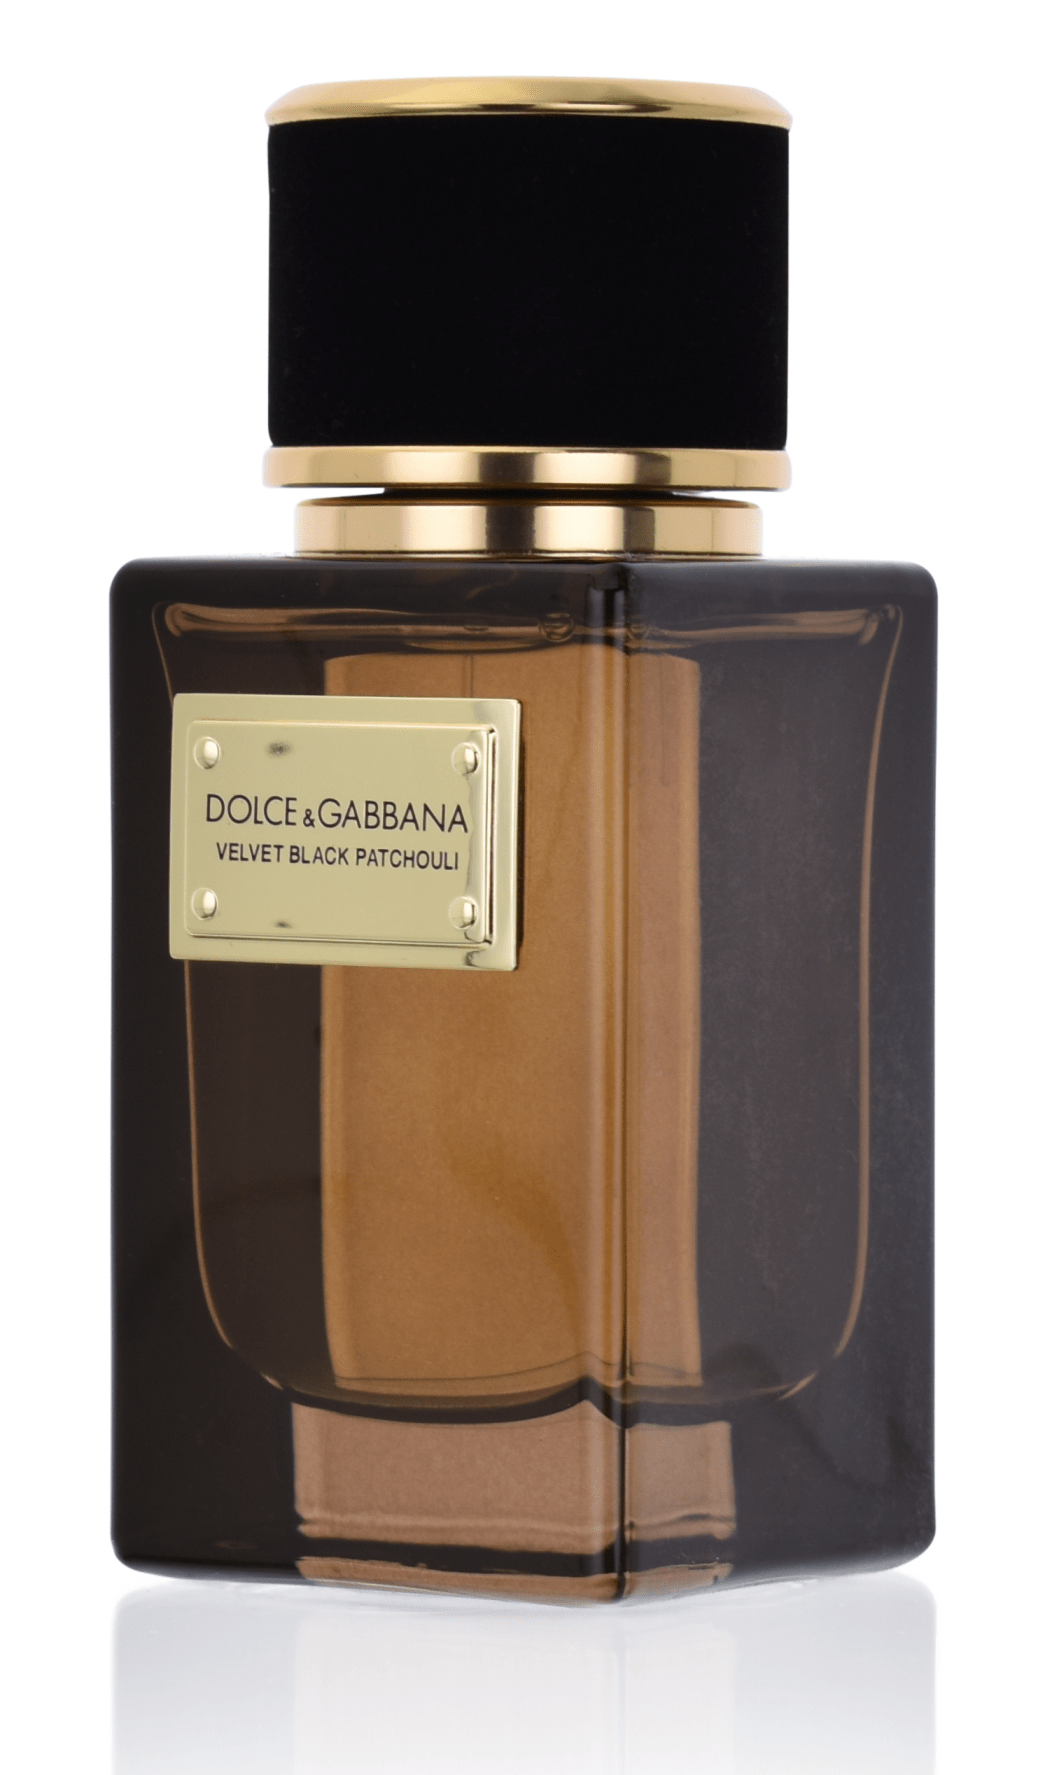 Dolce & Gabbana Velvet Black Patchouli 150 ml Eau de Parfum 